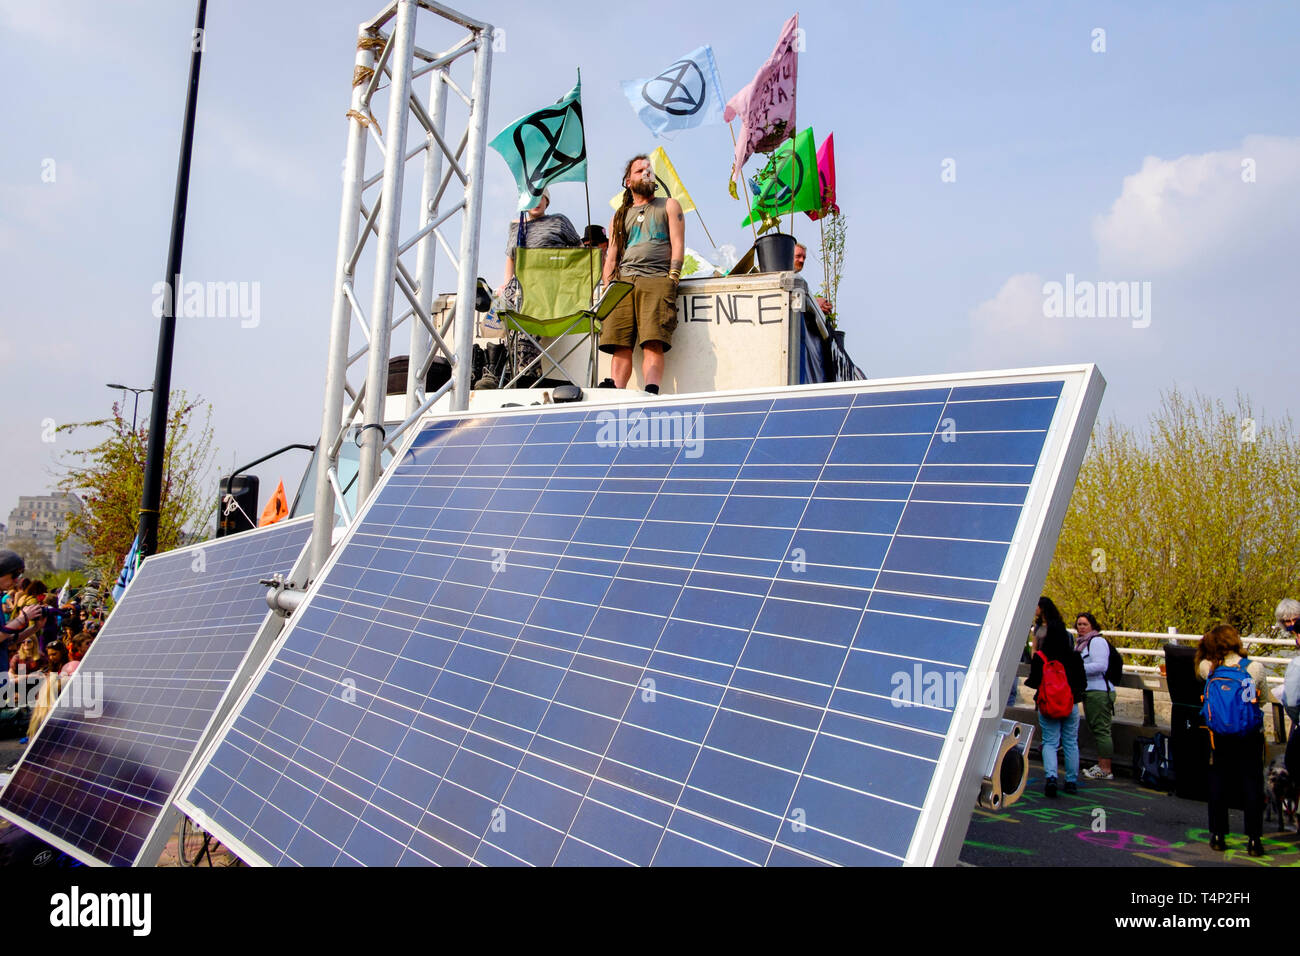 Extinction les militants de la rébellion occupent le pont Waterloo pour la troisième journée du 17 avril 2019 : les panneaux photovoltaïques fournissent de l'électricité à la manifestation. Banque D'Images